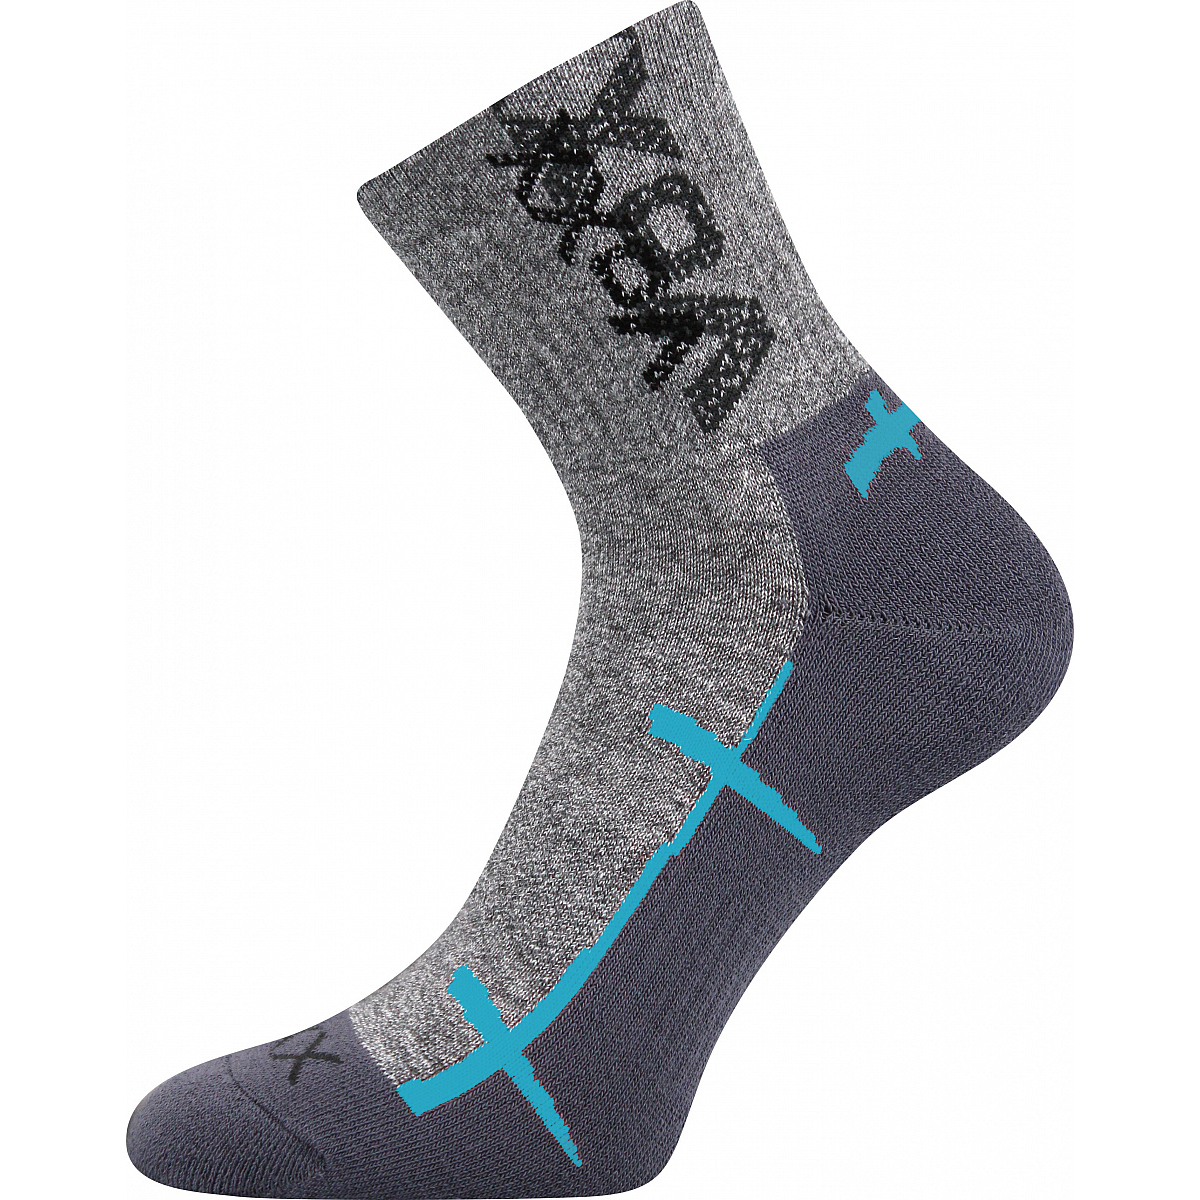 Sportovní ponožky Voxx Walli - šedé-světle modré, 43-46